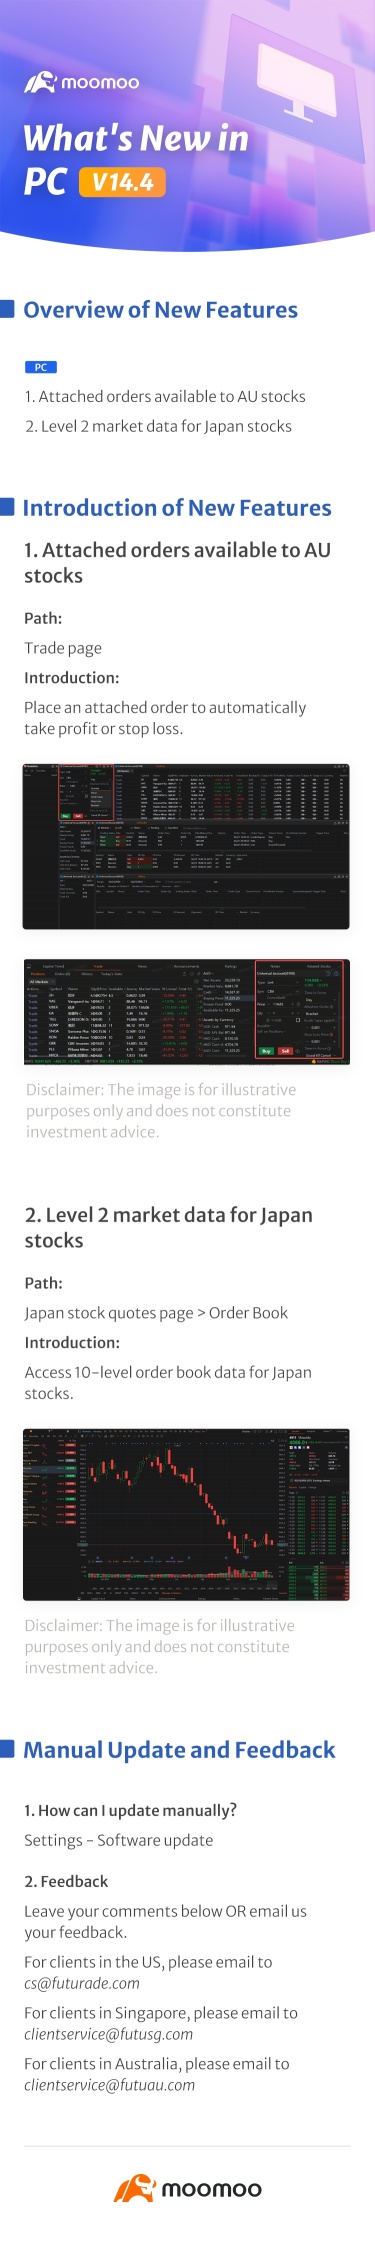 What's New: LV2 market data for Japan stocks in PC v14.4